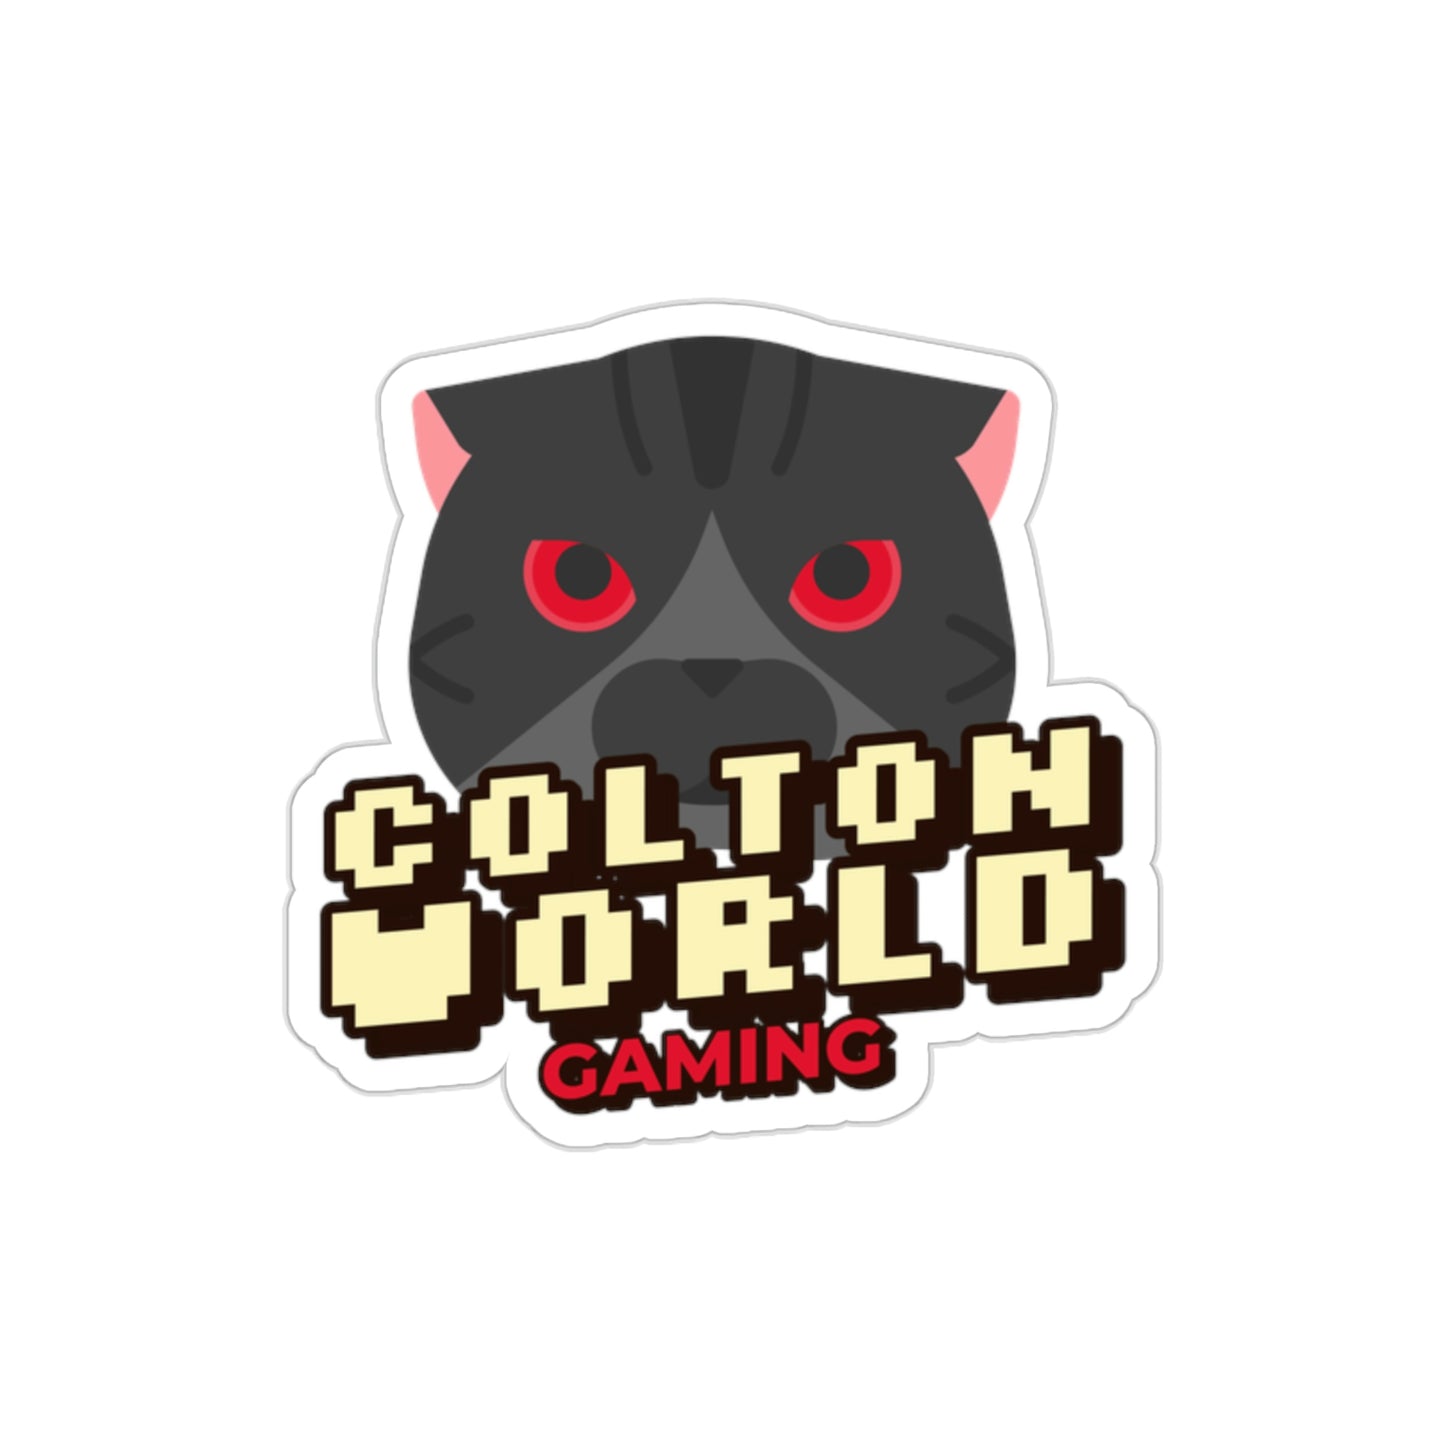 Colton World Stickers